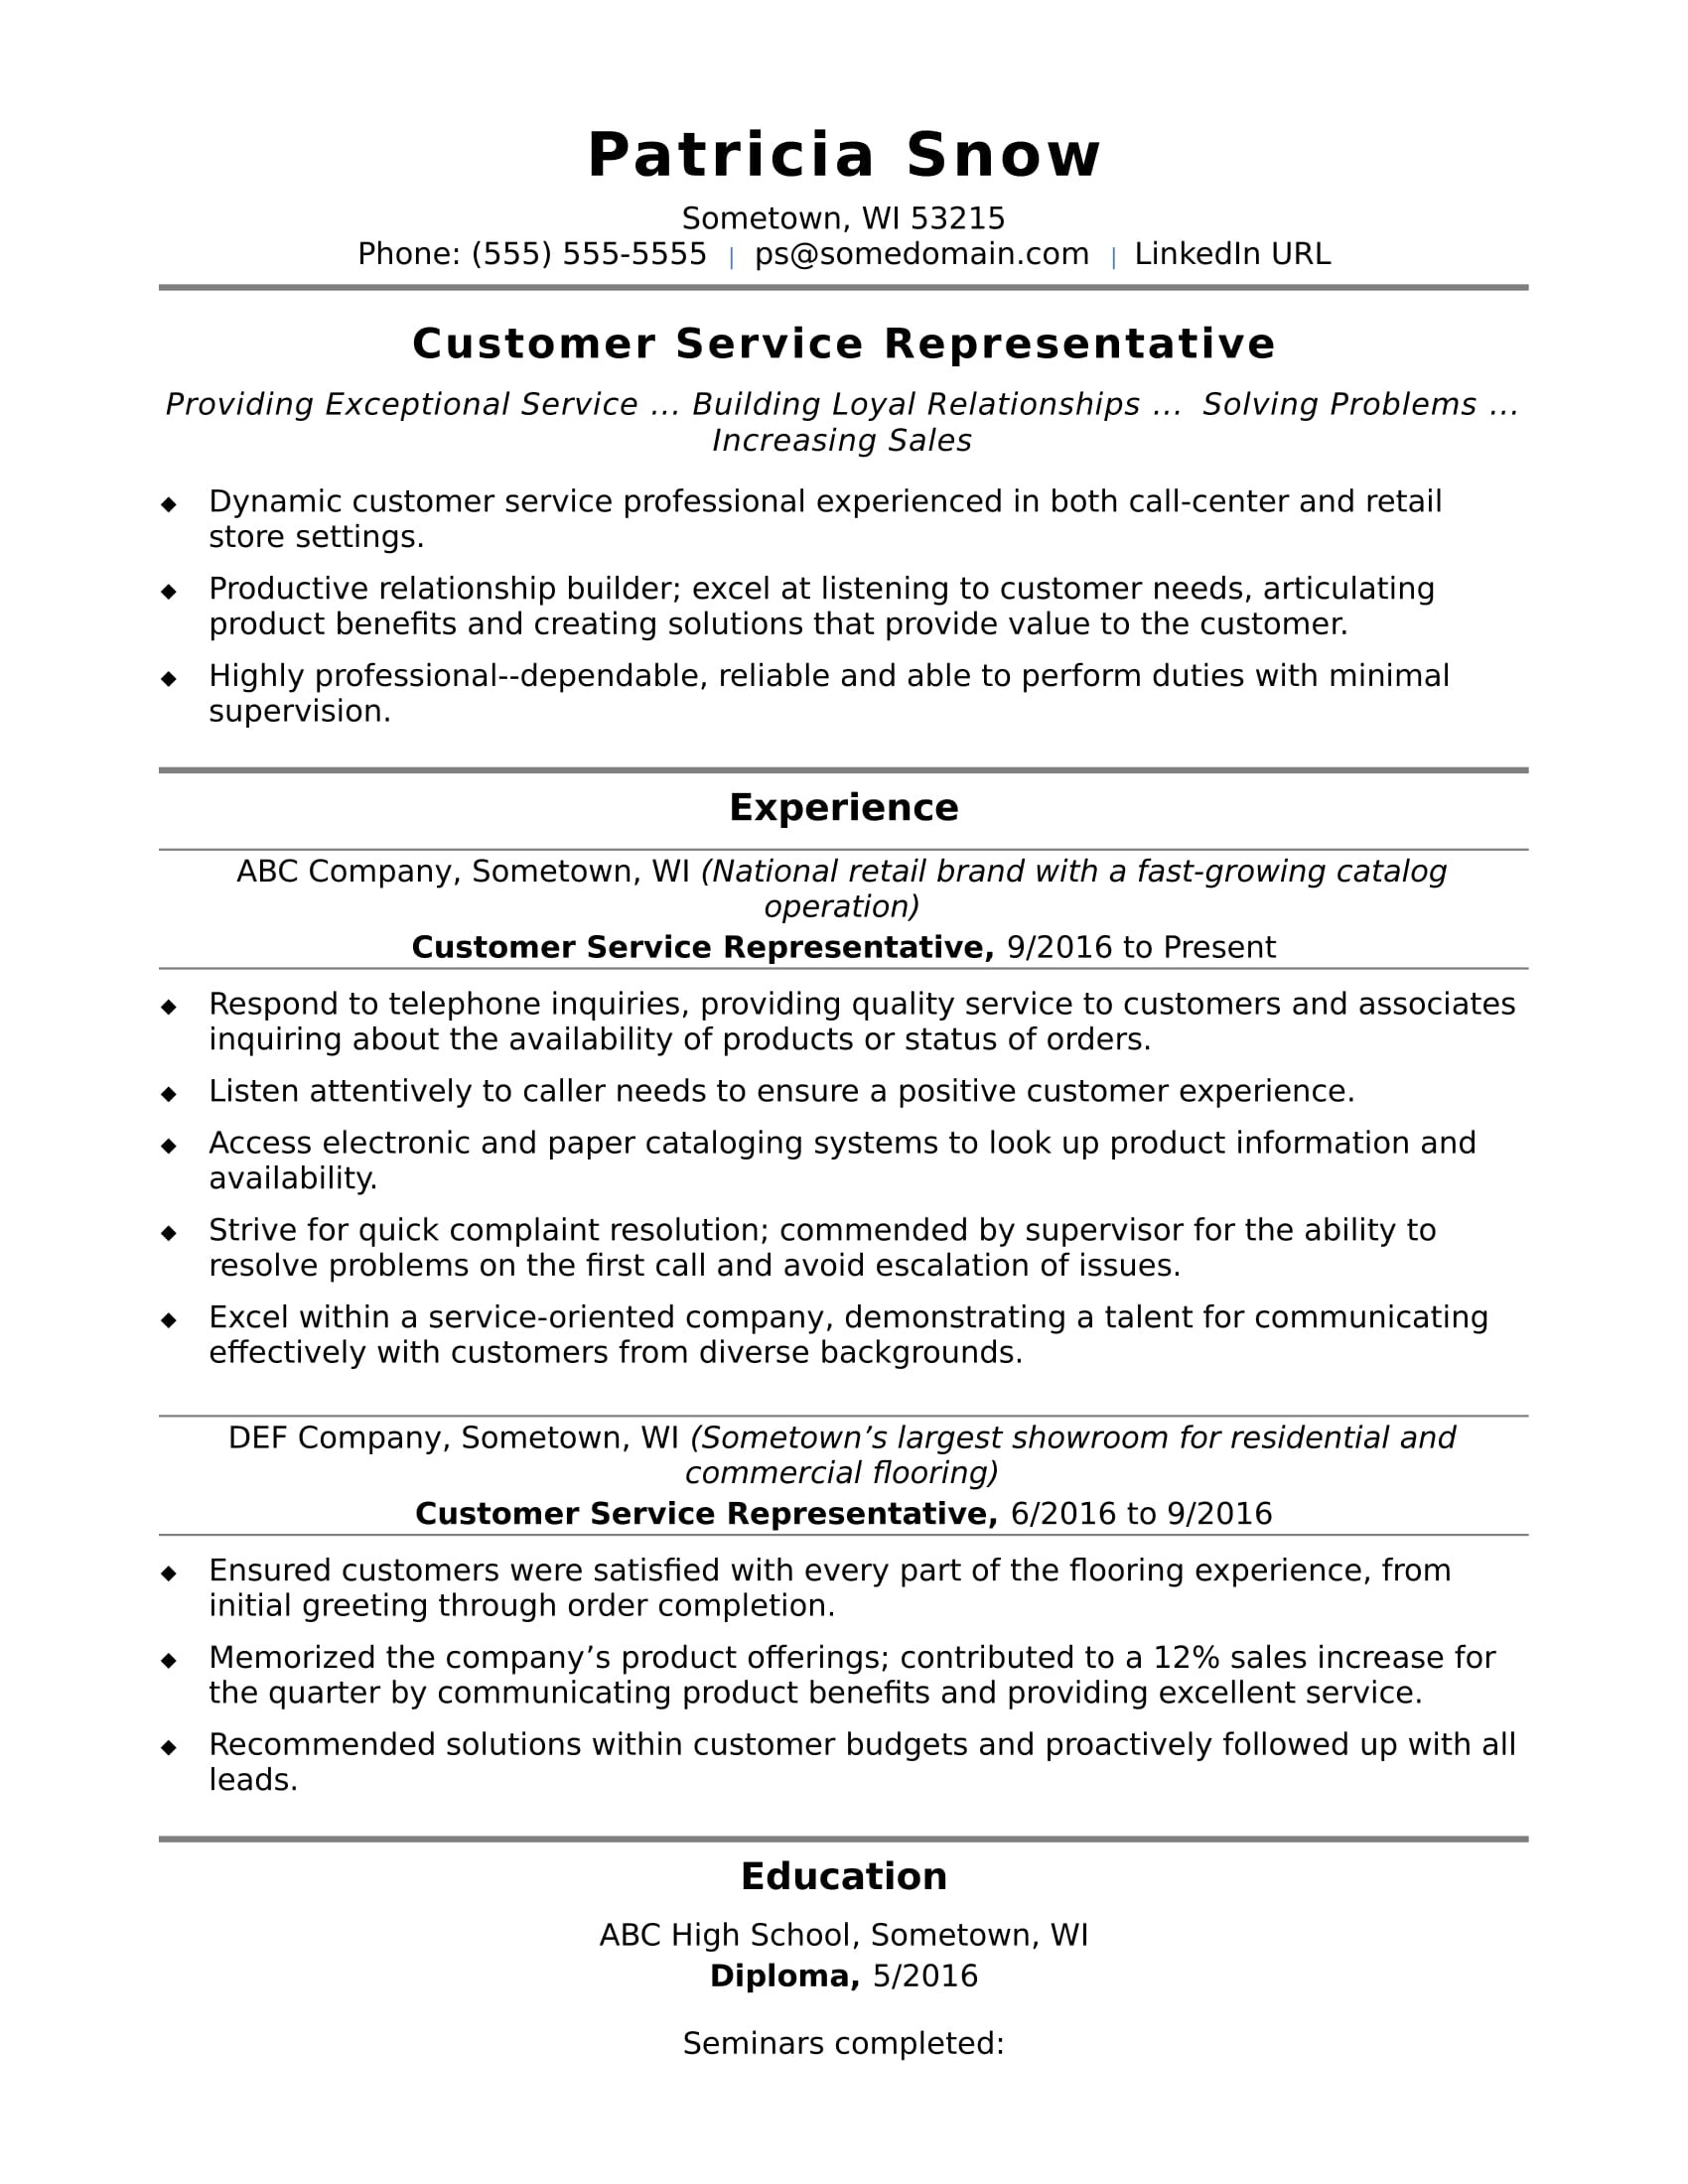 Resume Samples for Call Center Representative Customer Service Representative Resume Sample Monster.com